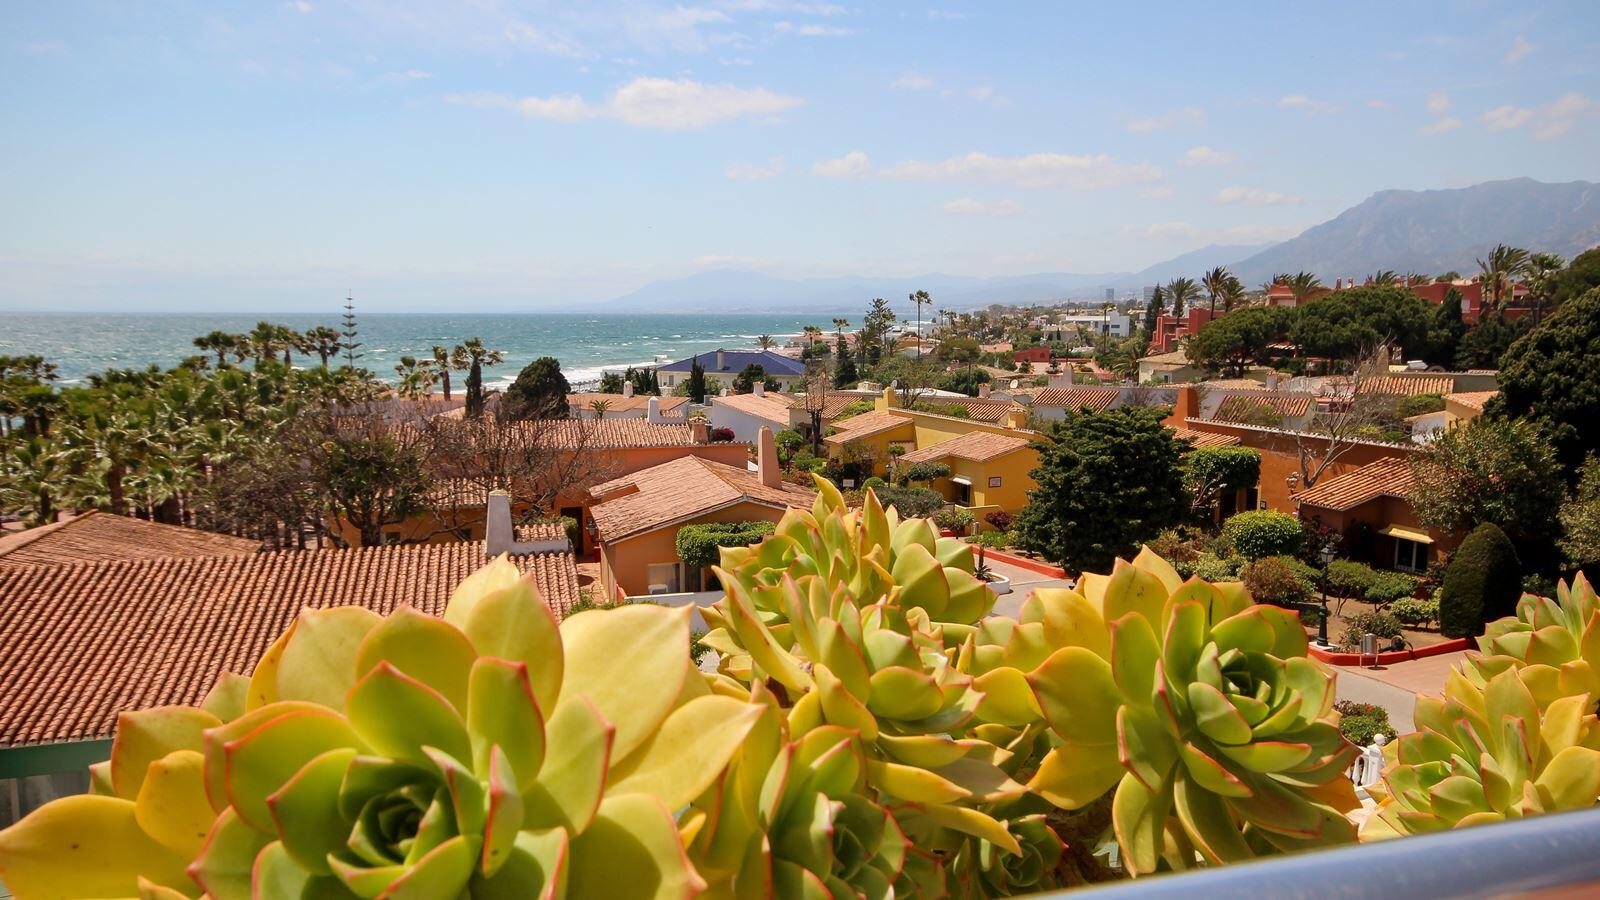 <h1>Glutenfreier Urlaub an der Costa del Sol</h1>